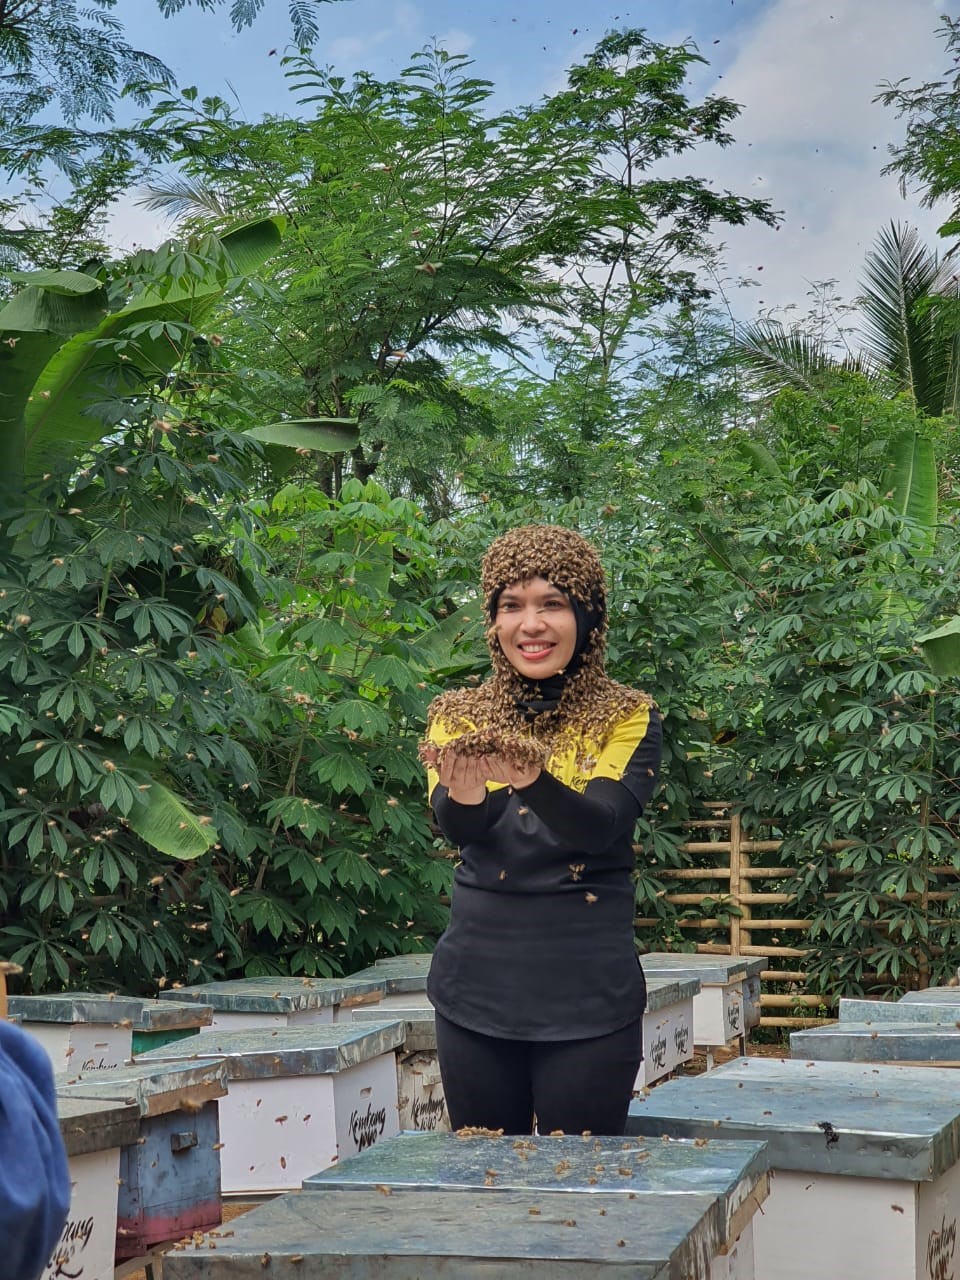 Dosen Fapet Unisma sebagai Praktisi Sekaligus Owner Perusahaan Lebah yang Laris Menjadi Narasumber Di Masa Pandemi